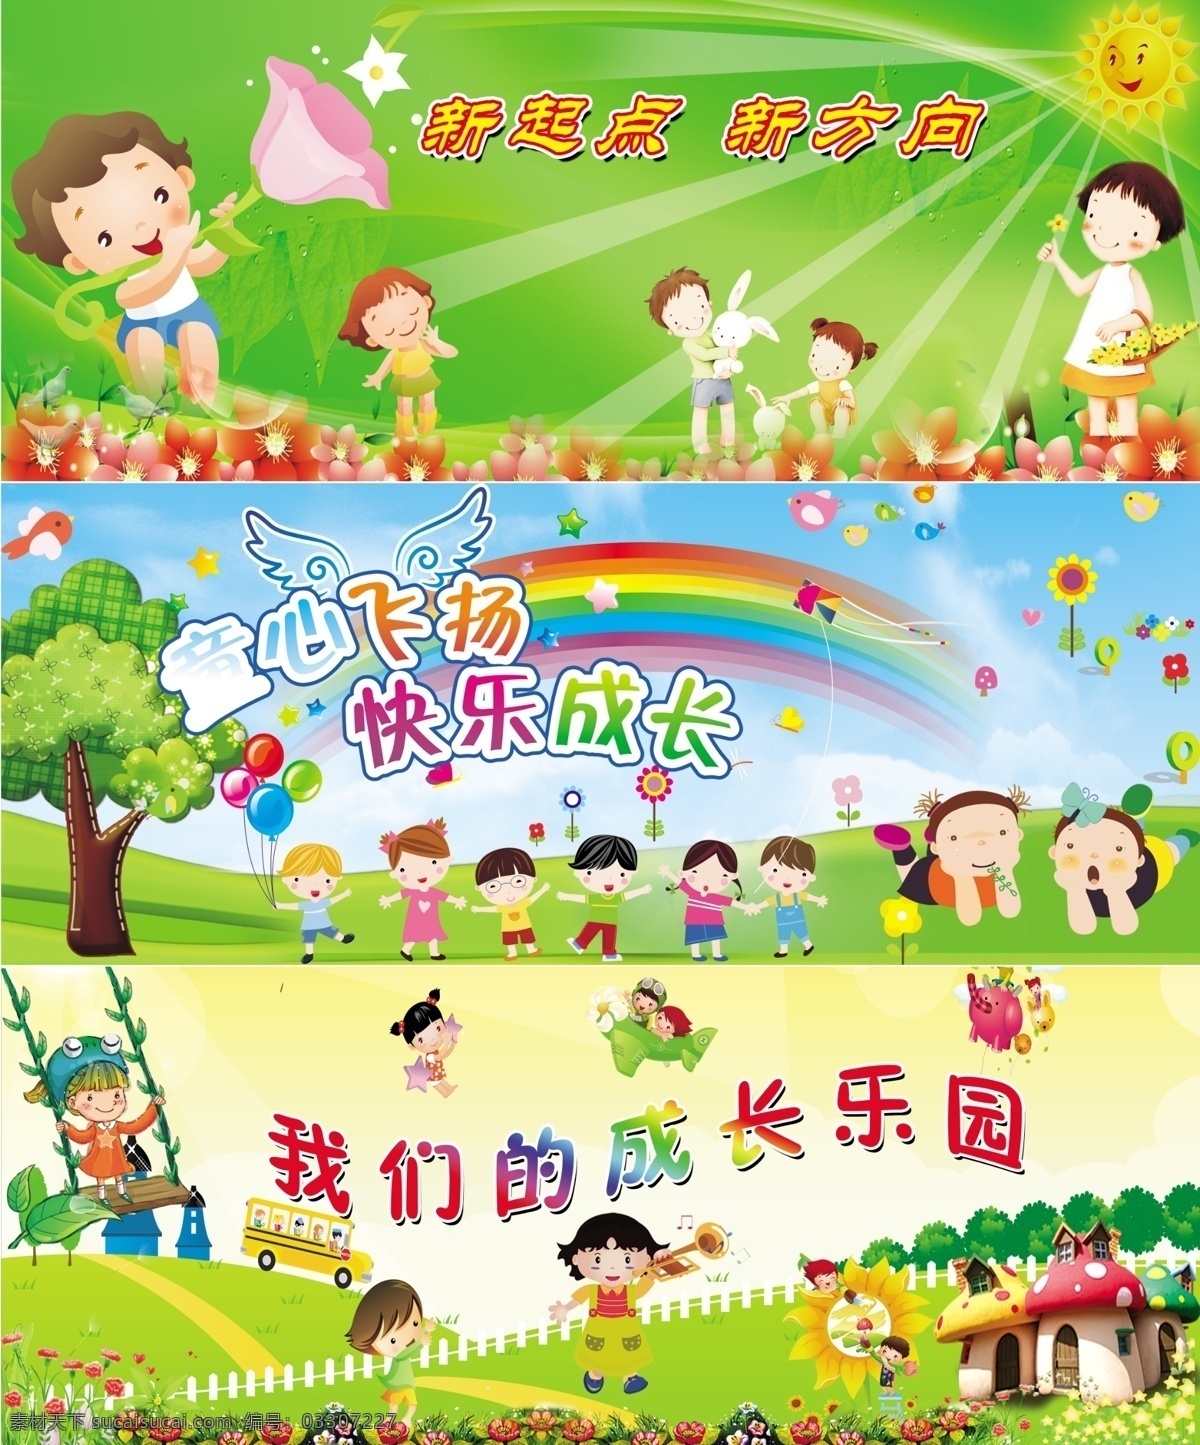 幼儿园海报 幼儿园 幼儿 乐园 孩子 快乐 广告设计模板 源文件